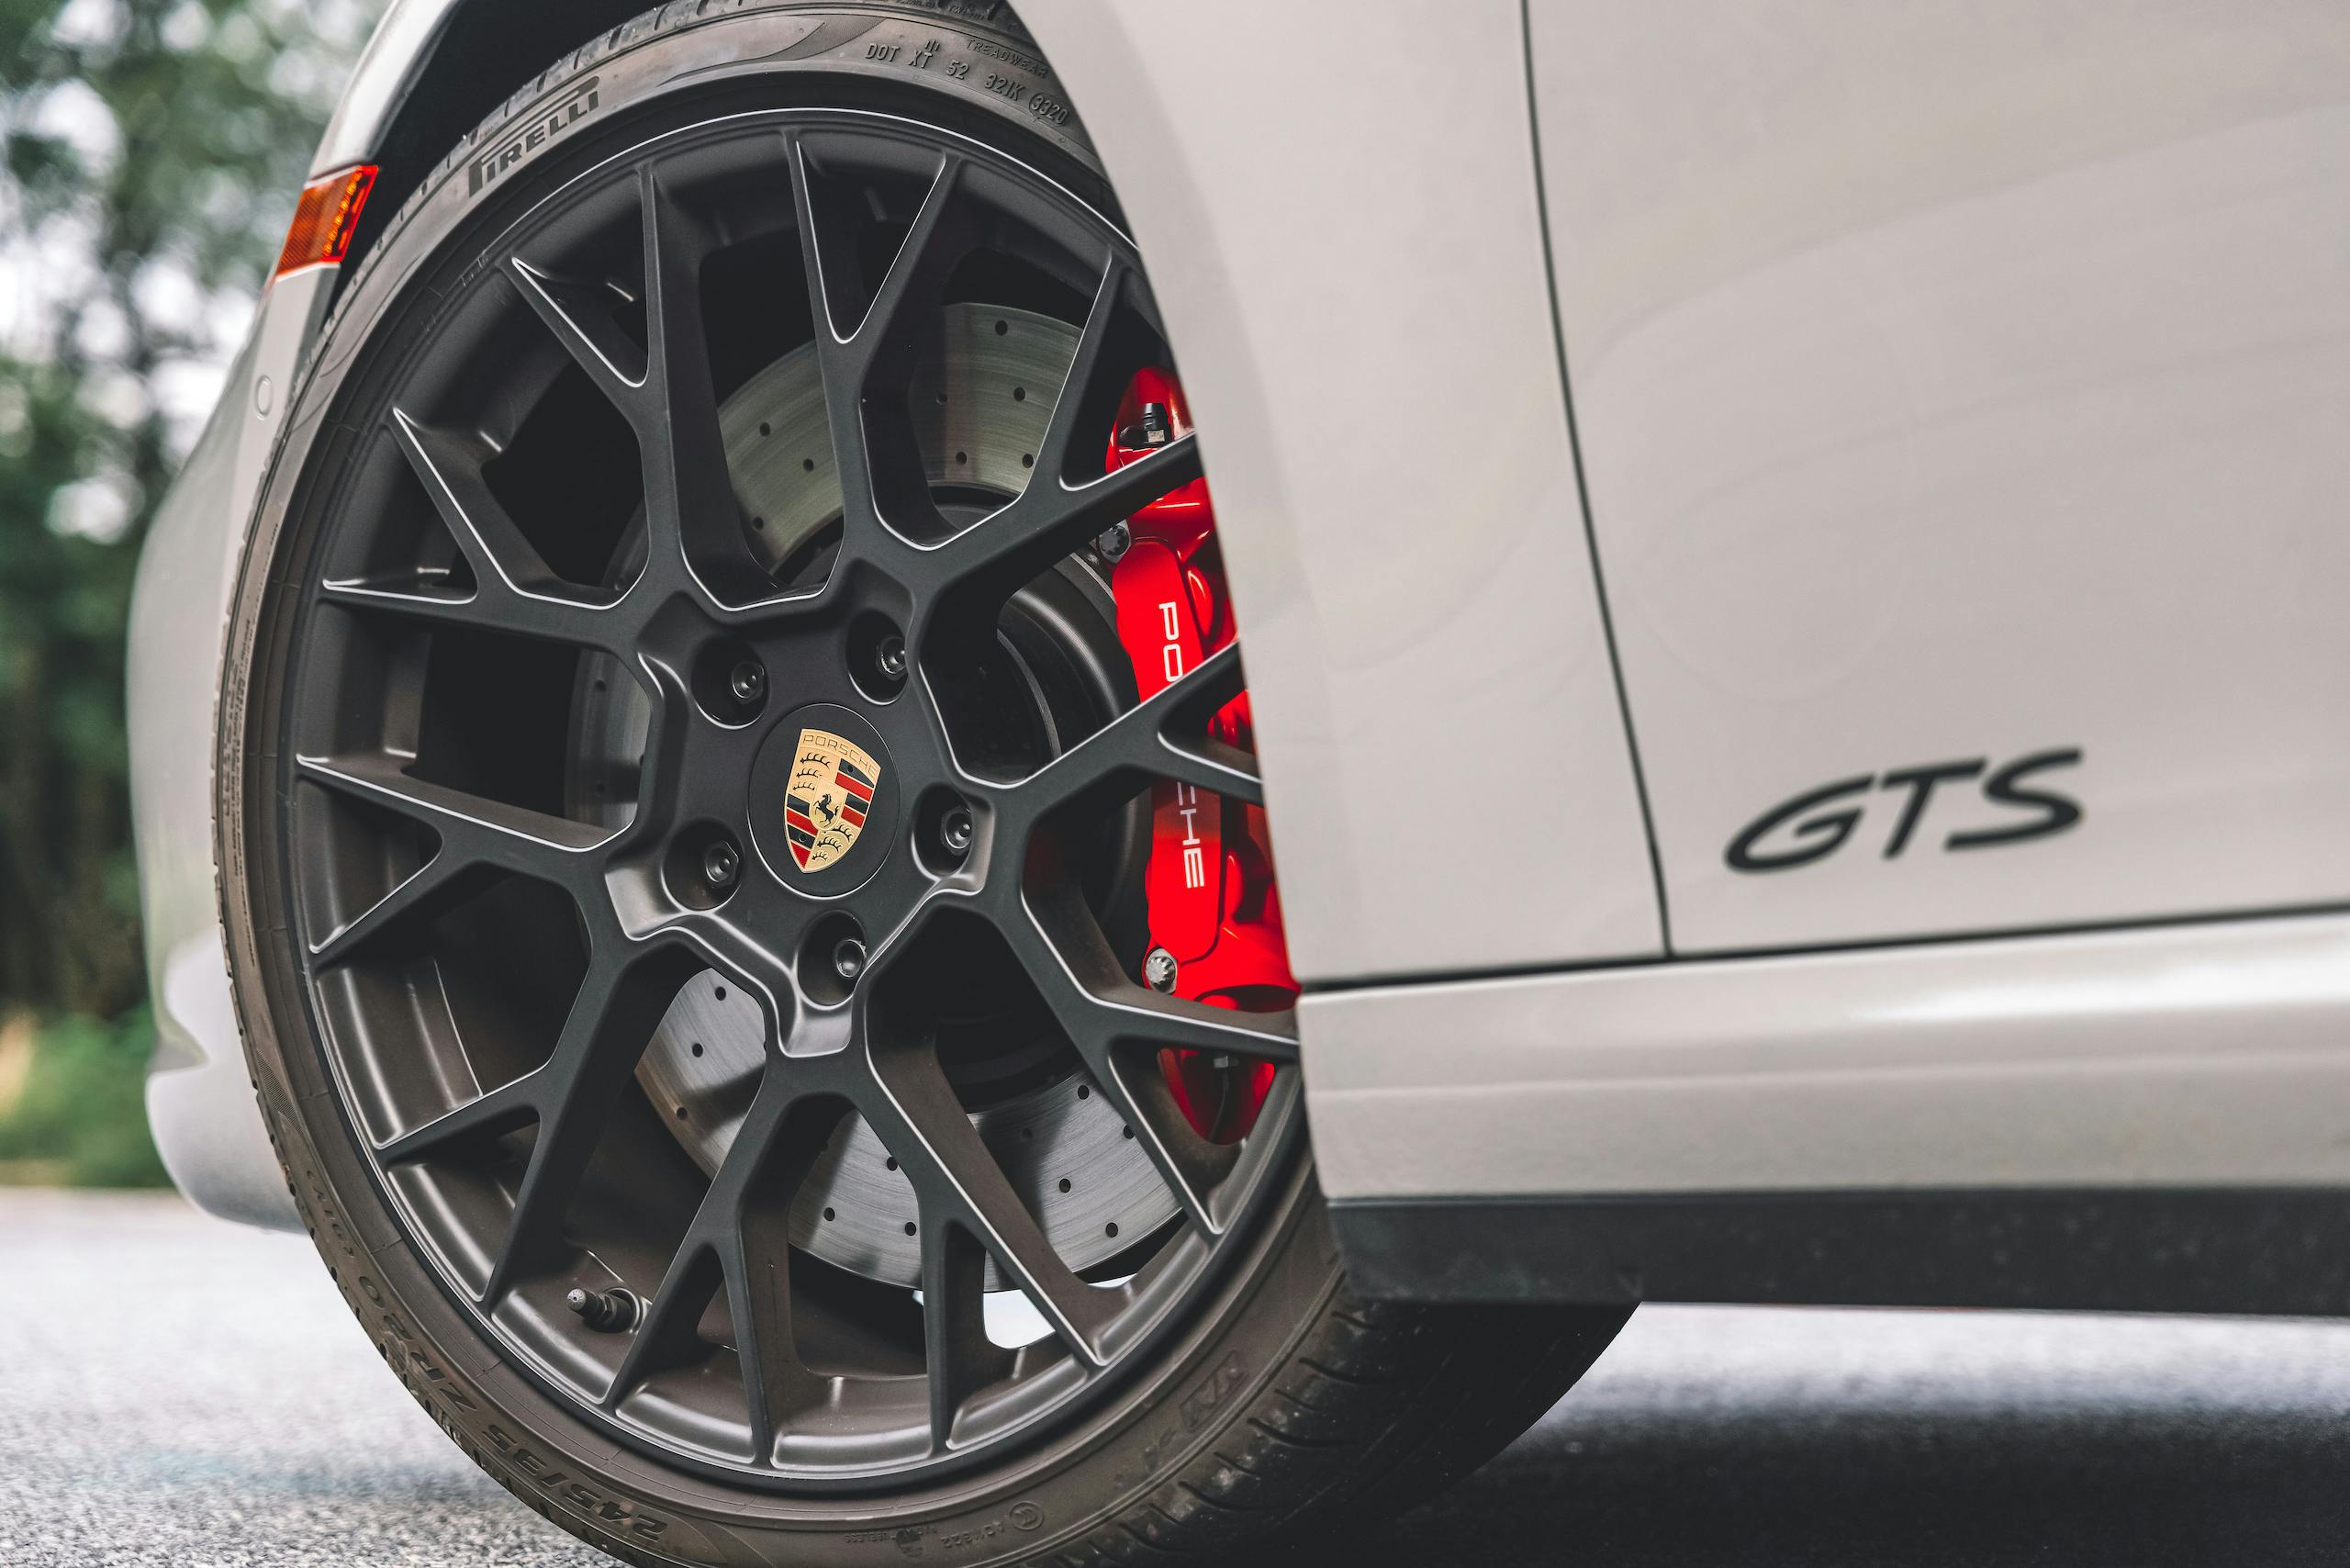 Porsche 911 Targa 4 GTS front wheel tire brakes